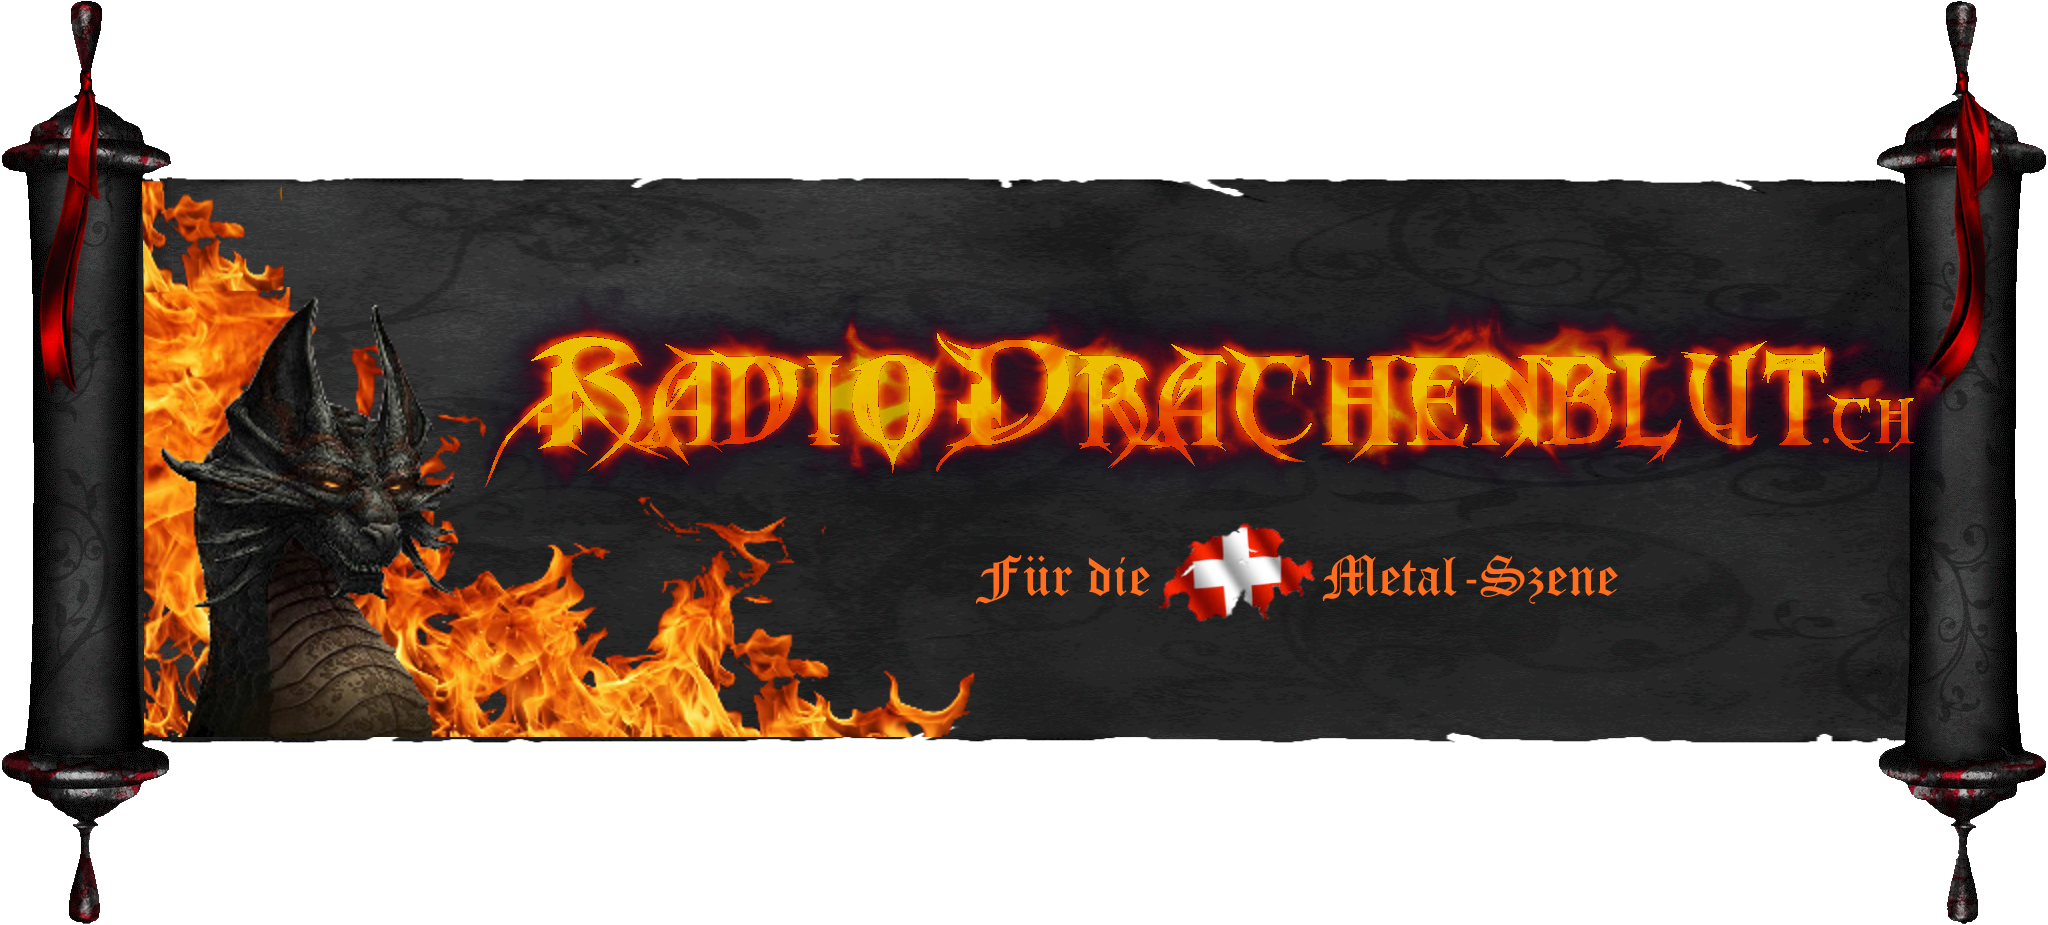 Radio Drachenblut, Dein schweizer Rock und Metal Radio